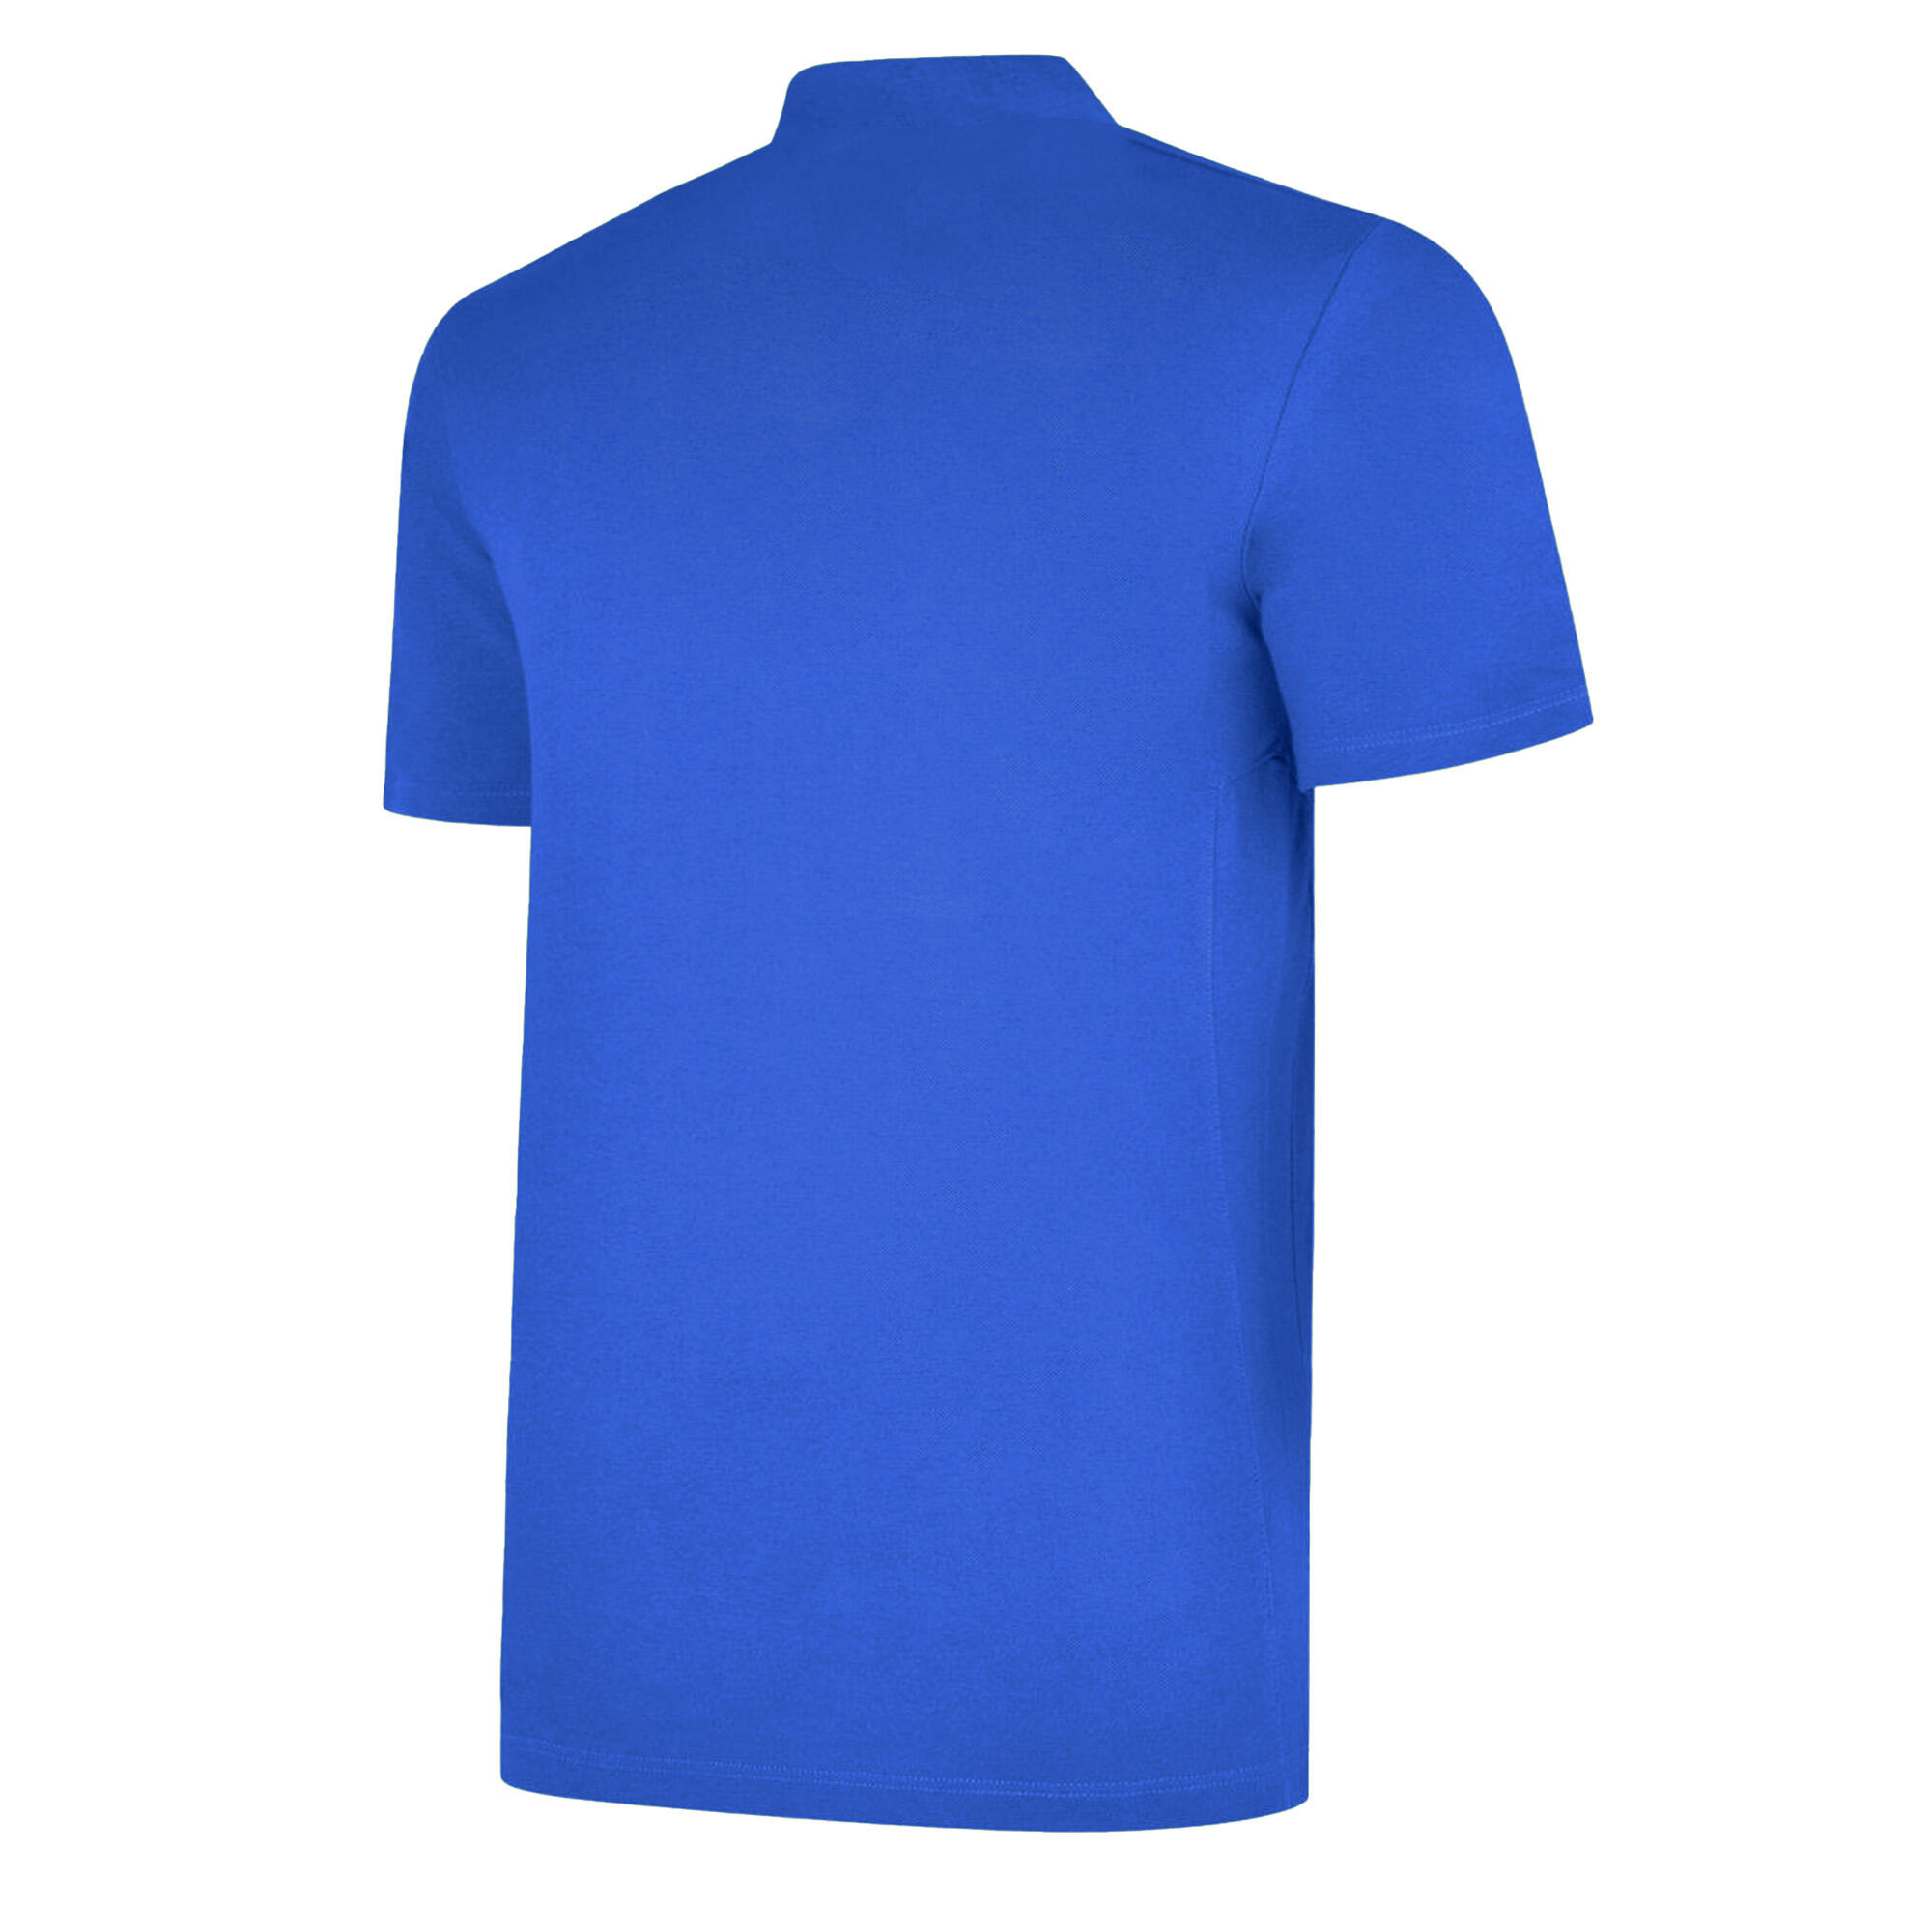 Boys Essential Polo Shirt (Royal Blue/White) 2/3